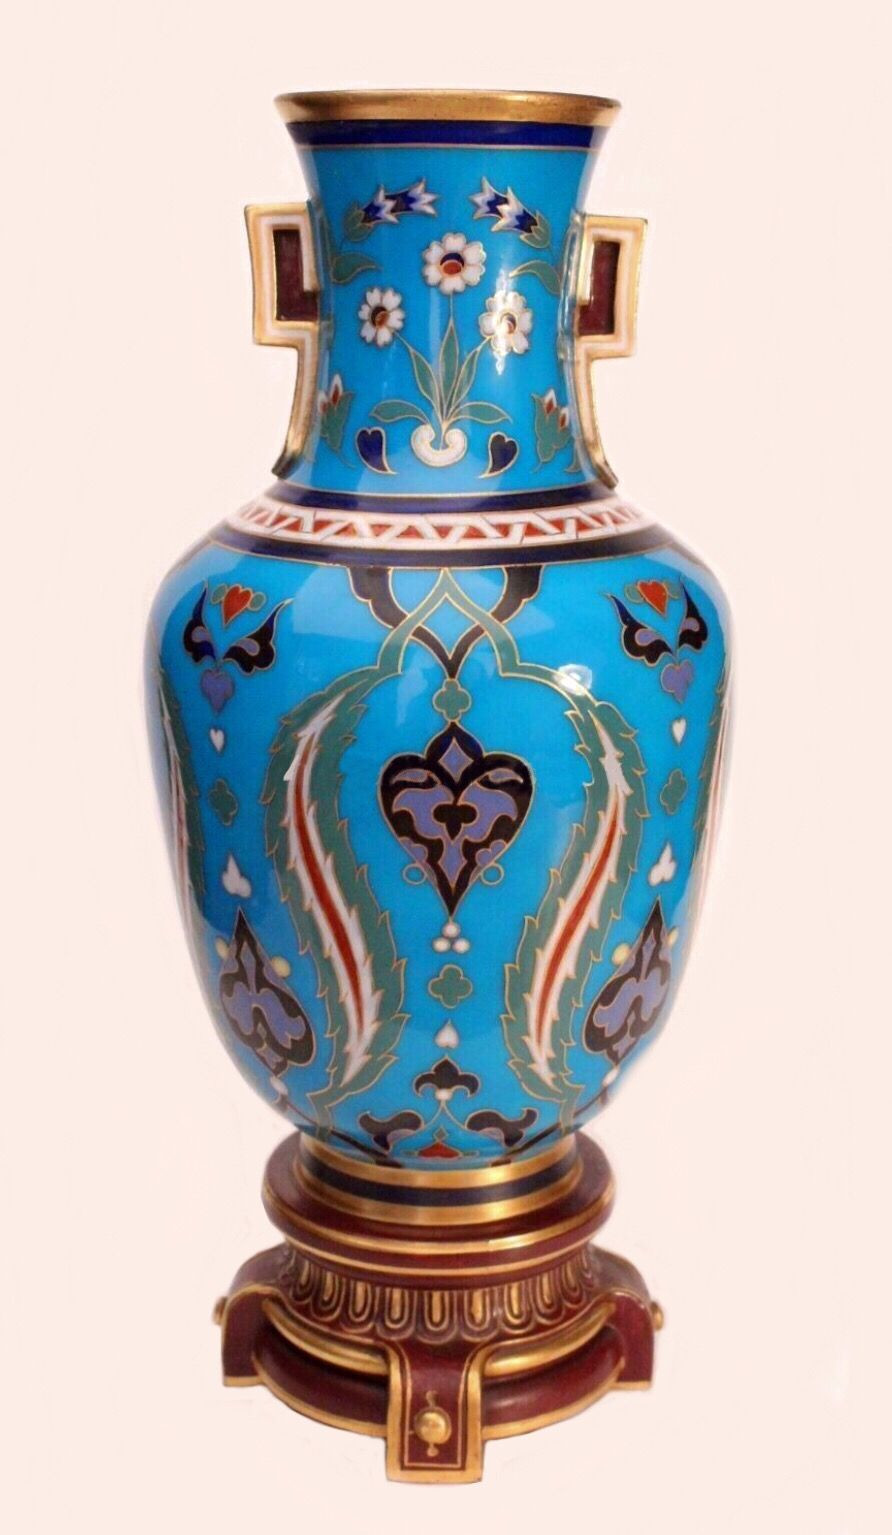 22 Fabulous Tulip Vase Antique 2024 free download tulip vase antique of minton porcelain vase by christopher dresser minton porcelain inside minton porcelain vase by christopher dresser